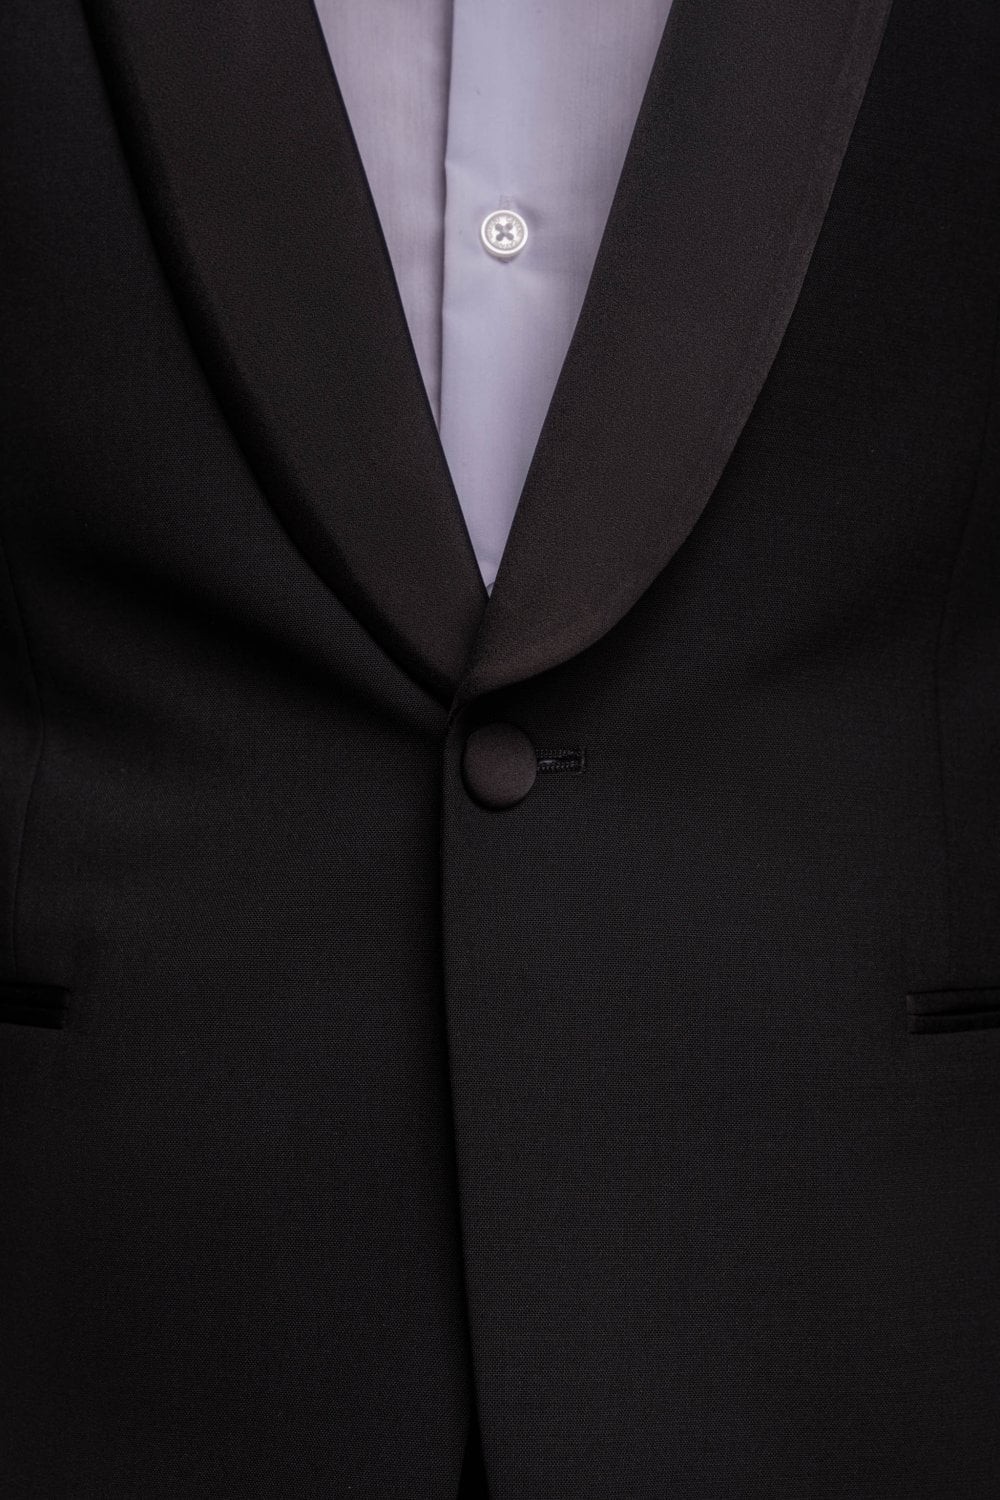 Herren-Smokinganzug aus Wollmischung in schmaler Passform, formelle schlichte Jacke und Hose, separat erhältlich